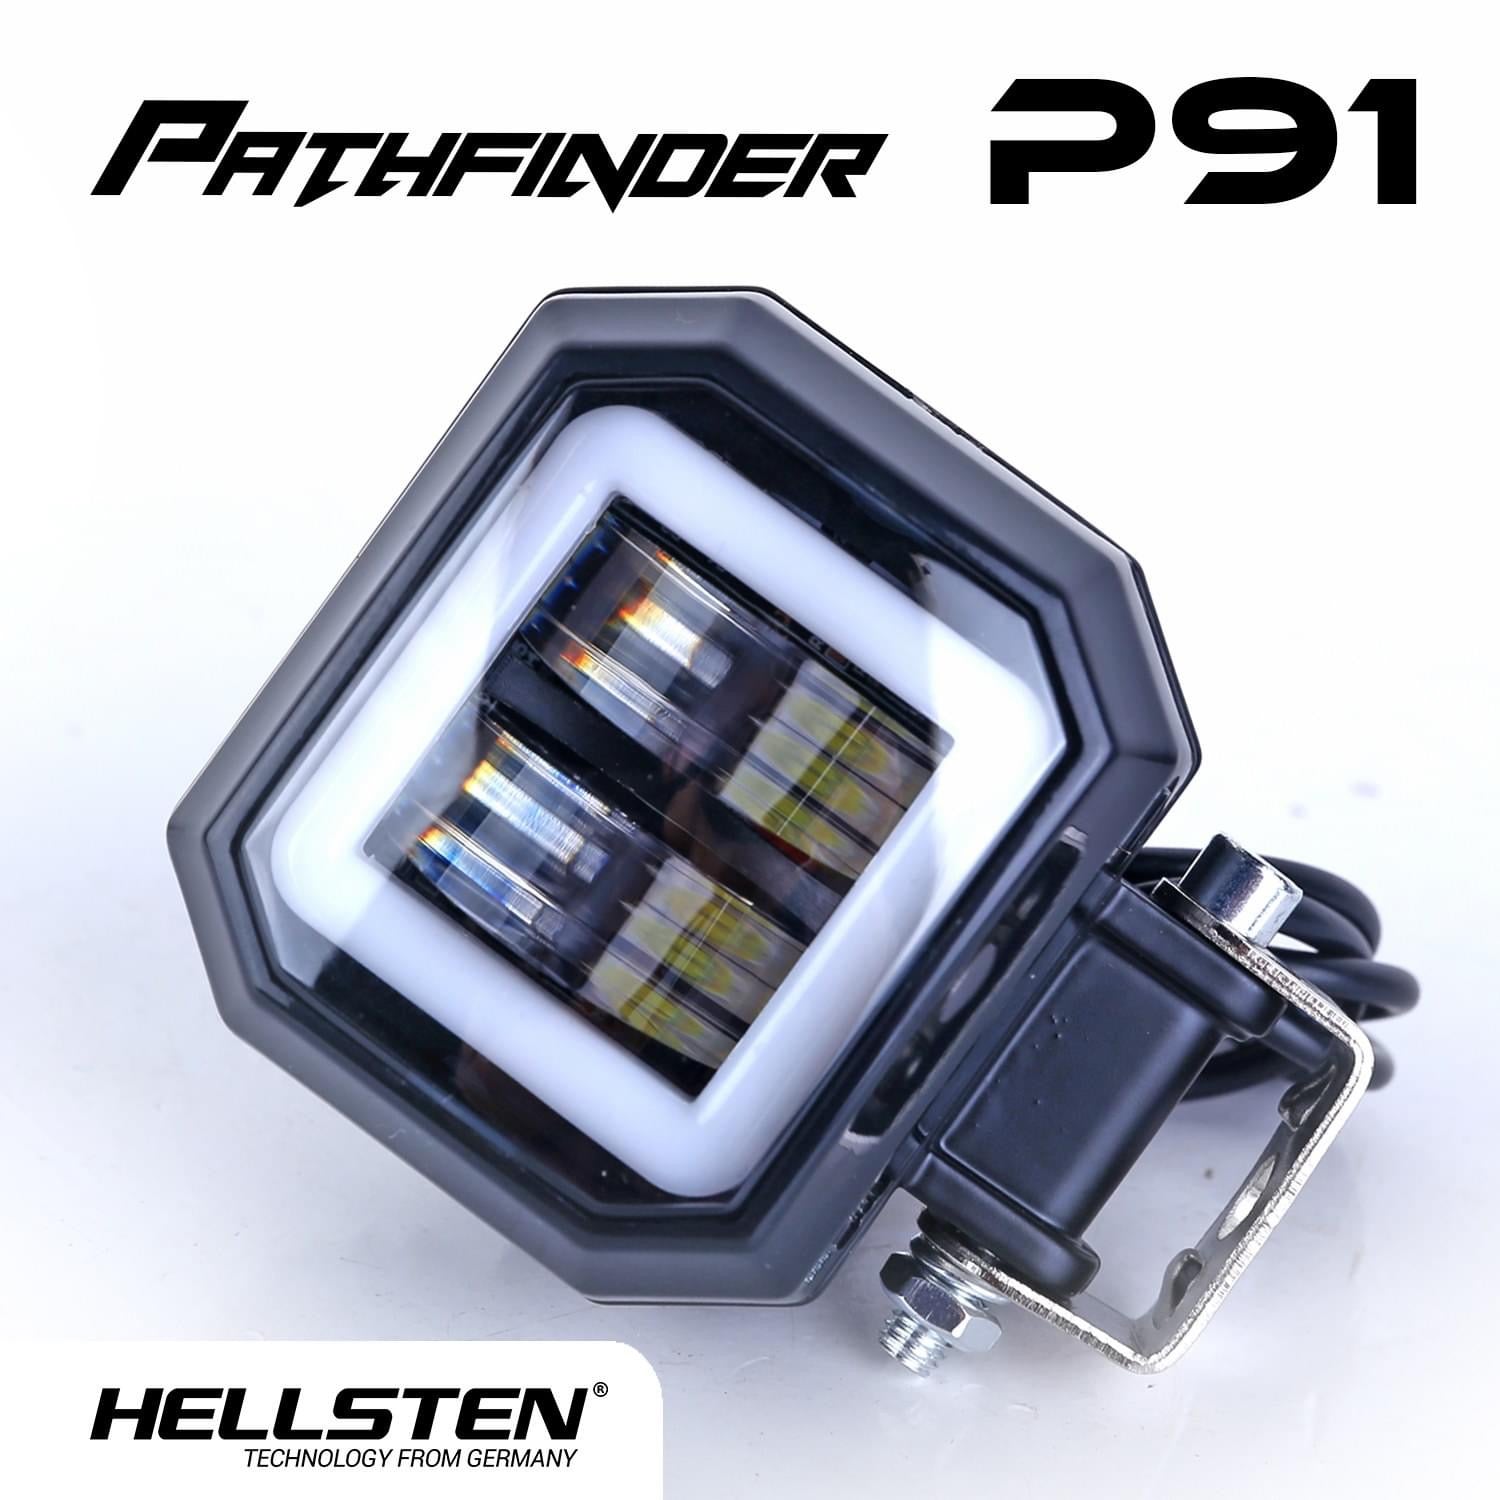 Hellsten P91 PATHFINDER - Hellsten LED Philippines